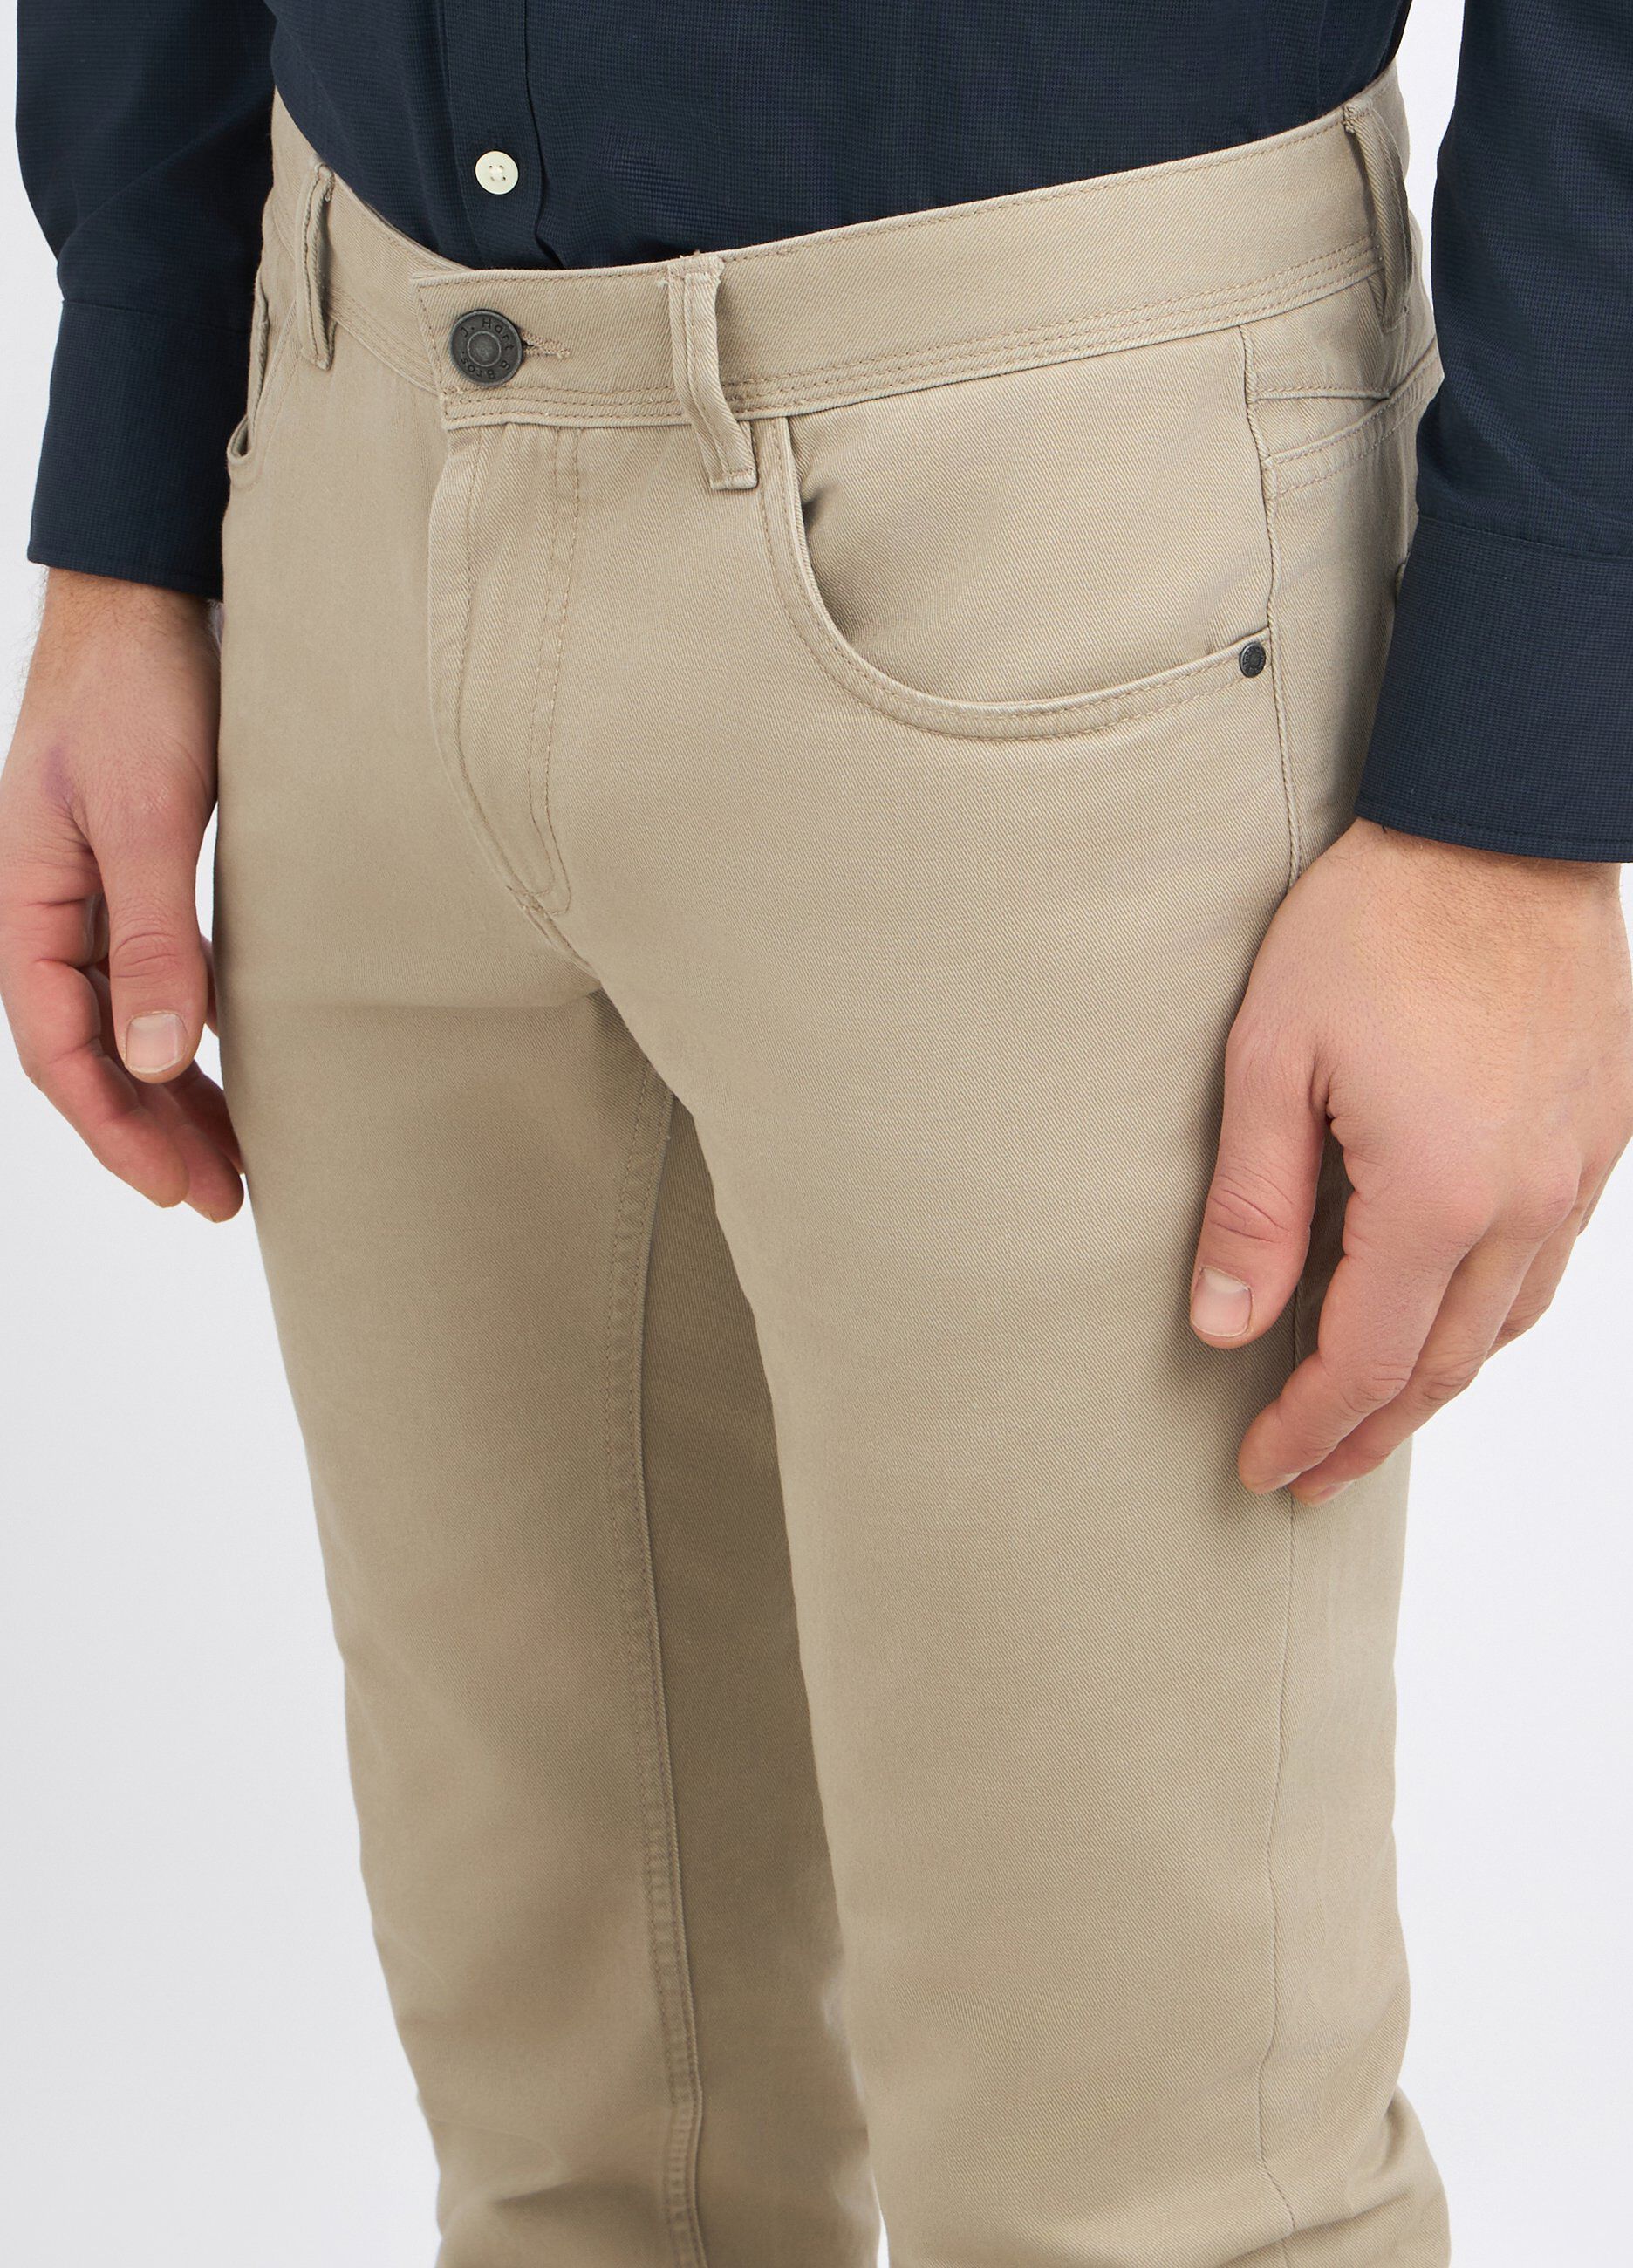 Pantaloni in puro cotone modello 5 tasche uomo_2